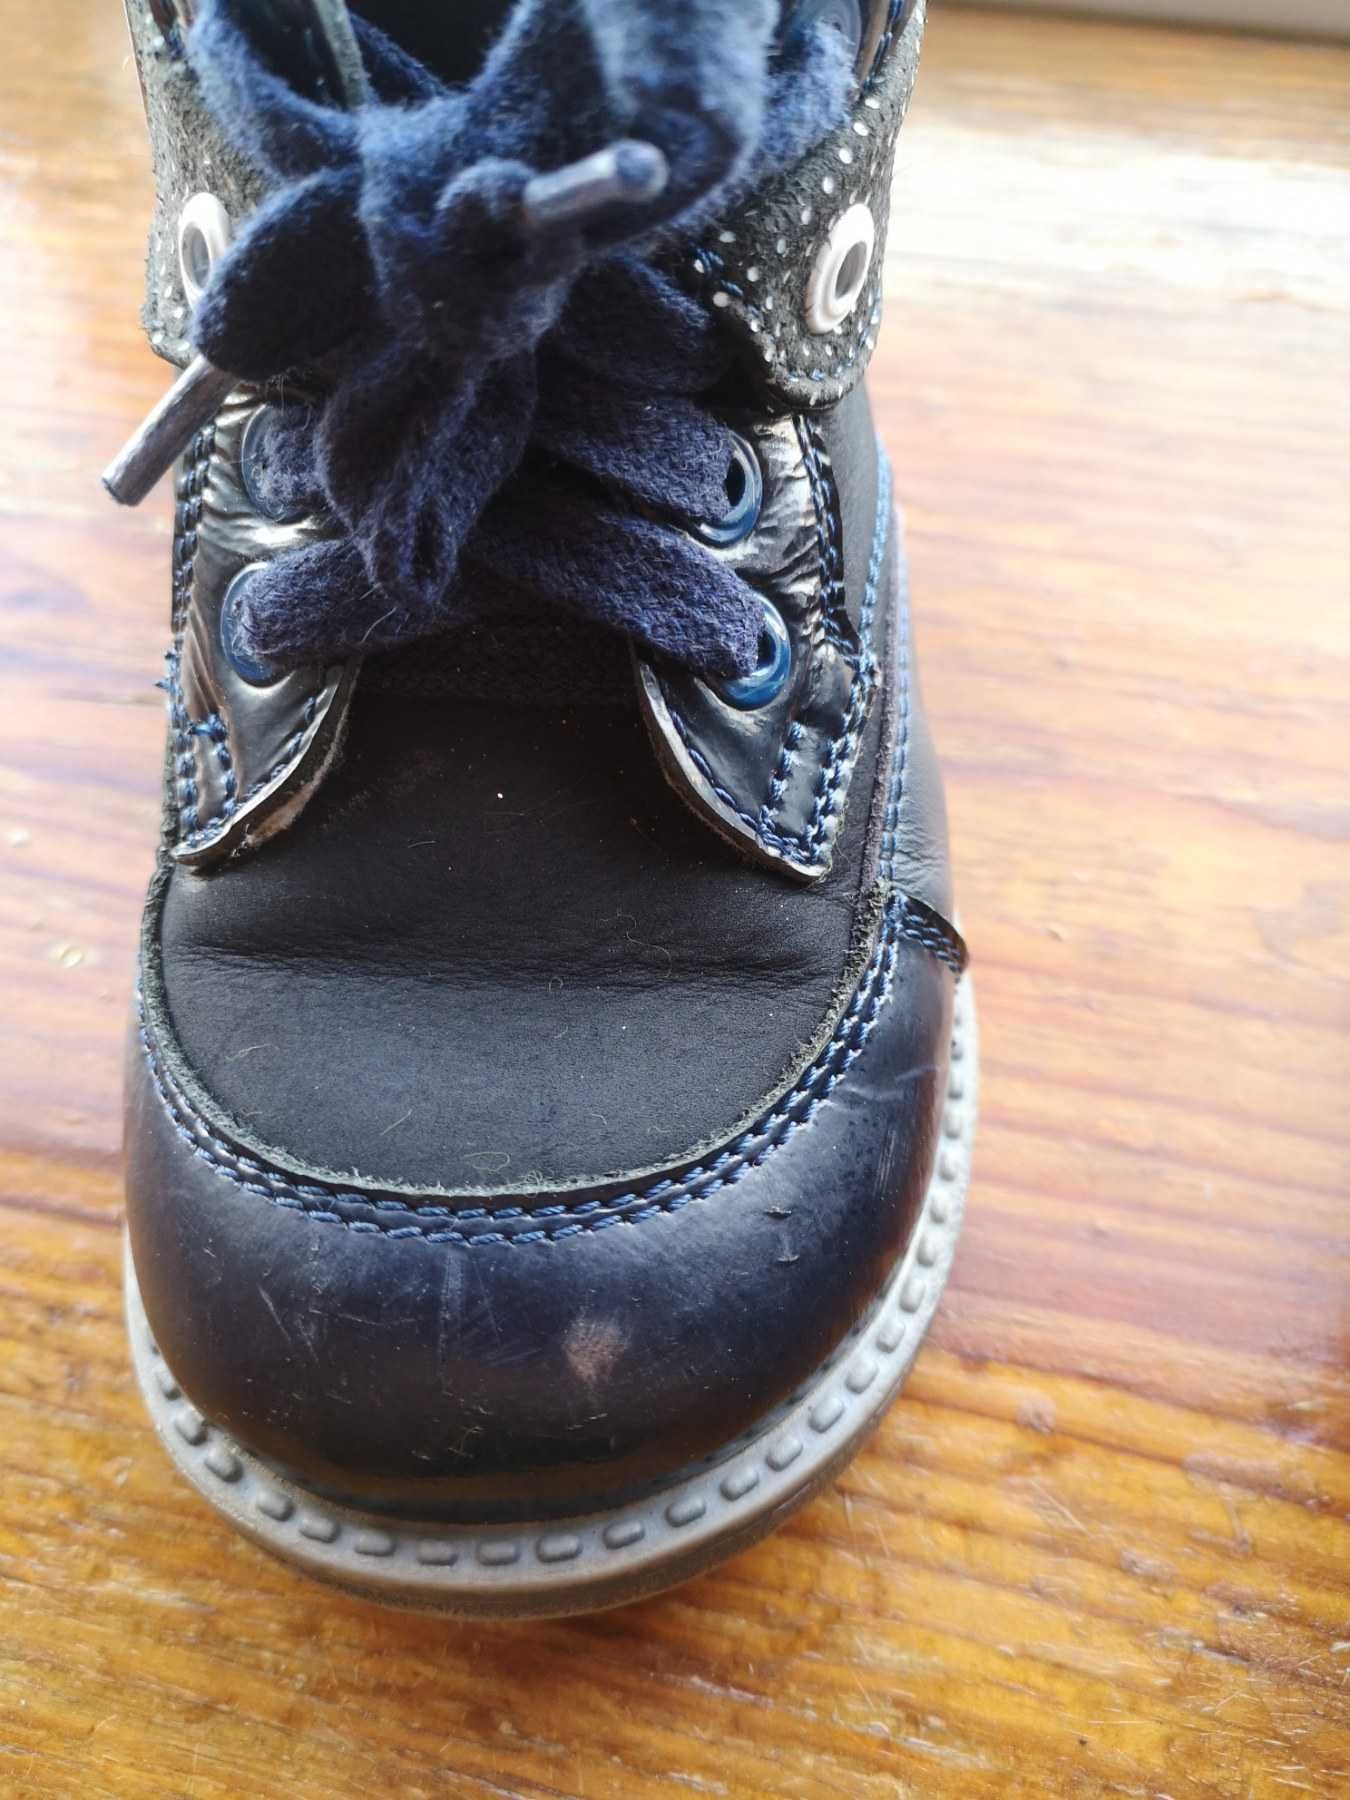 Осінні чоботи з натуральної шкіри, розмір 24 см, весняне дитяче взуття